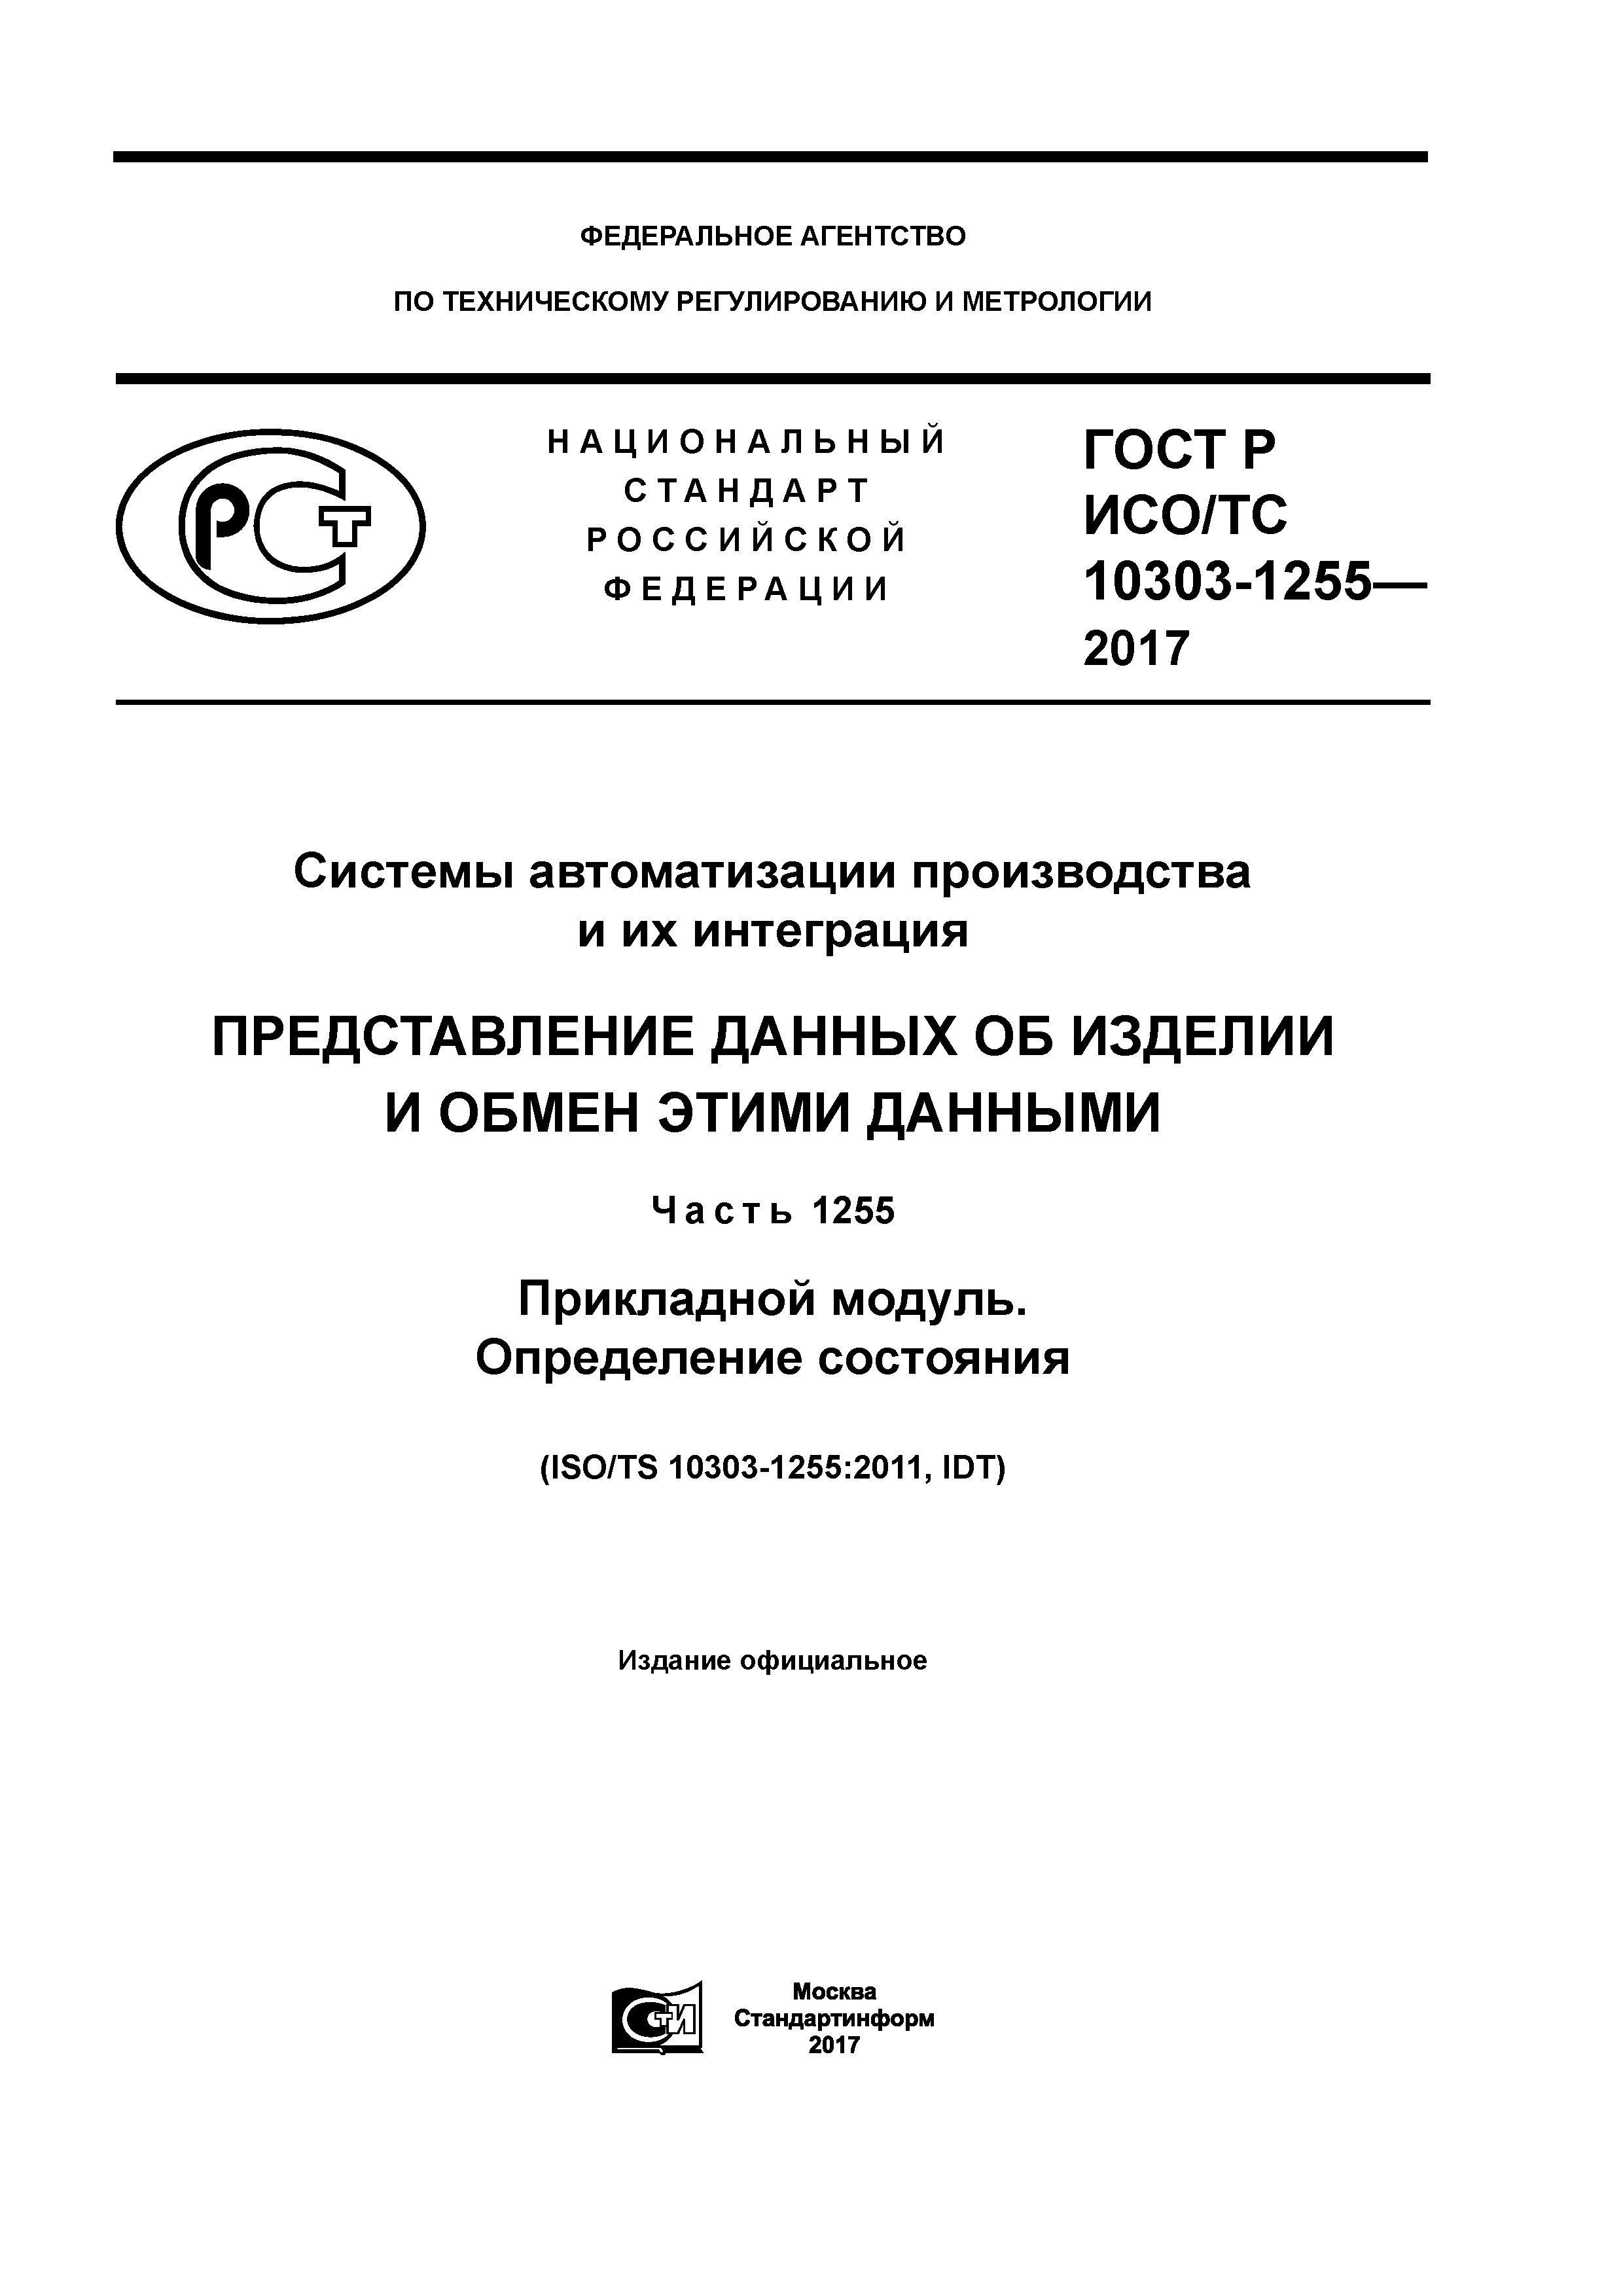 ГОСТ Р ИСО/ТС 10303-1255-2017